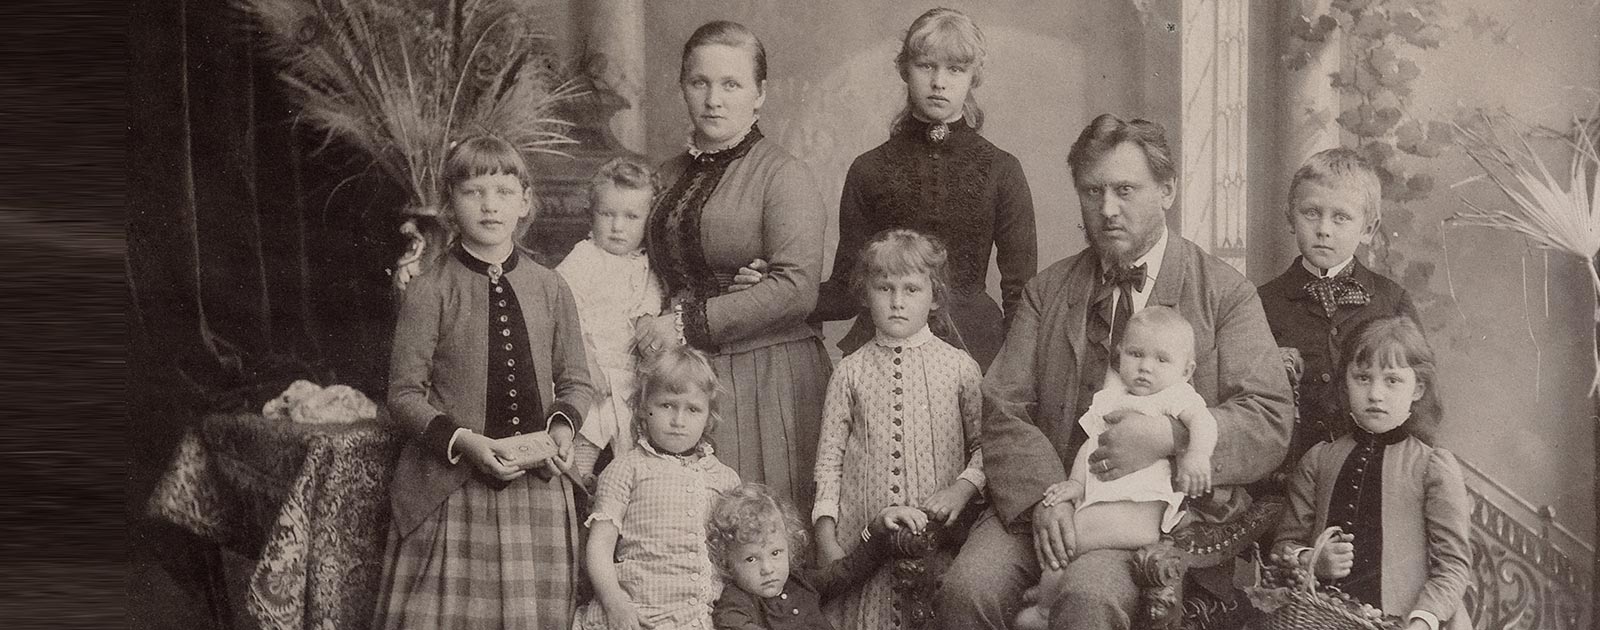 Johanna Settari, la bisnonna dell'attuale proprietaria dell'hotel Briol con la famiglia in una fotografia in bianco e nero